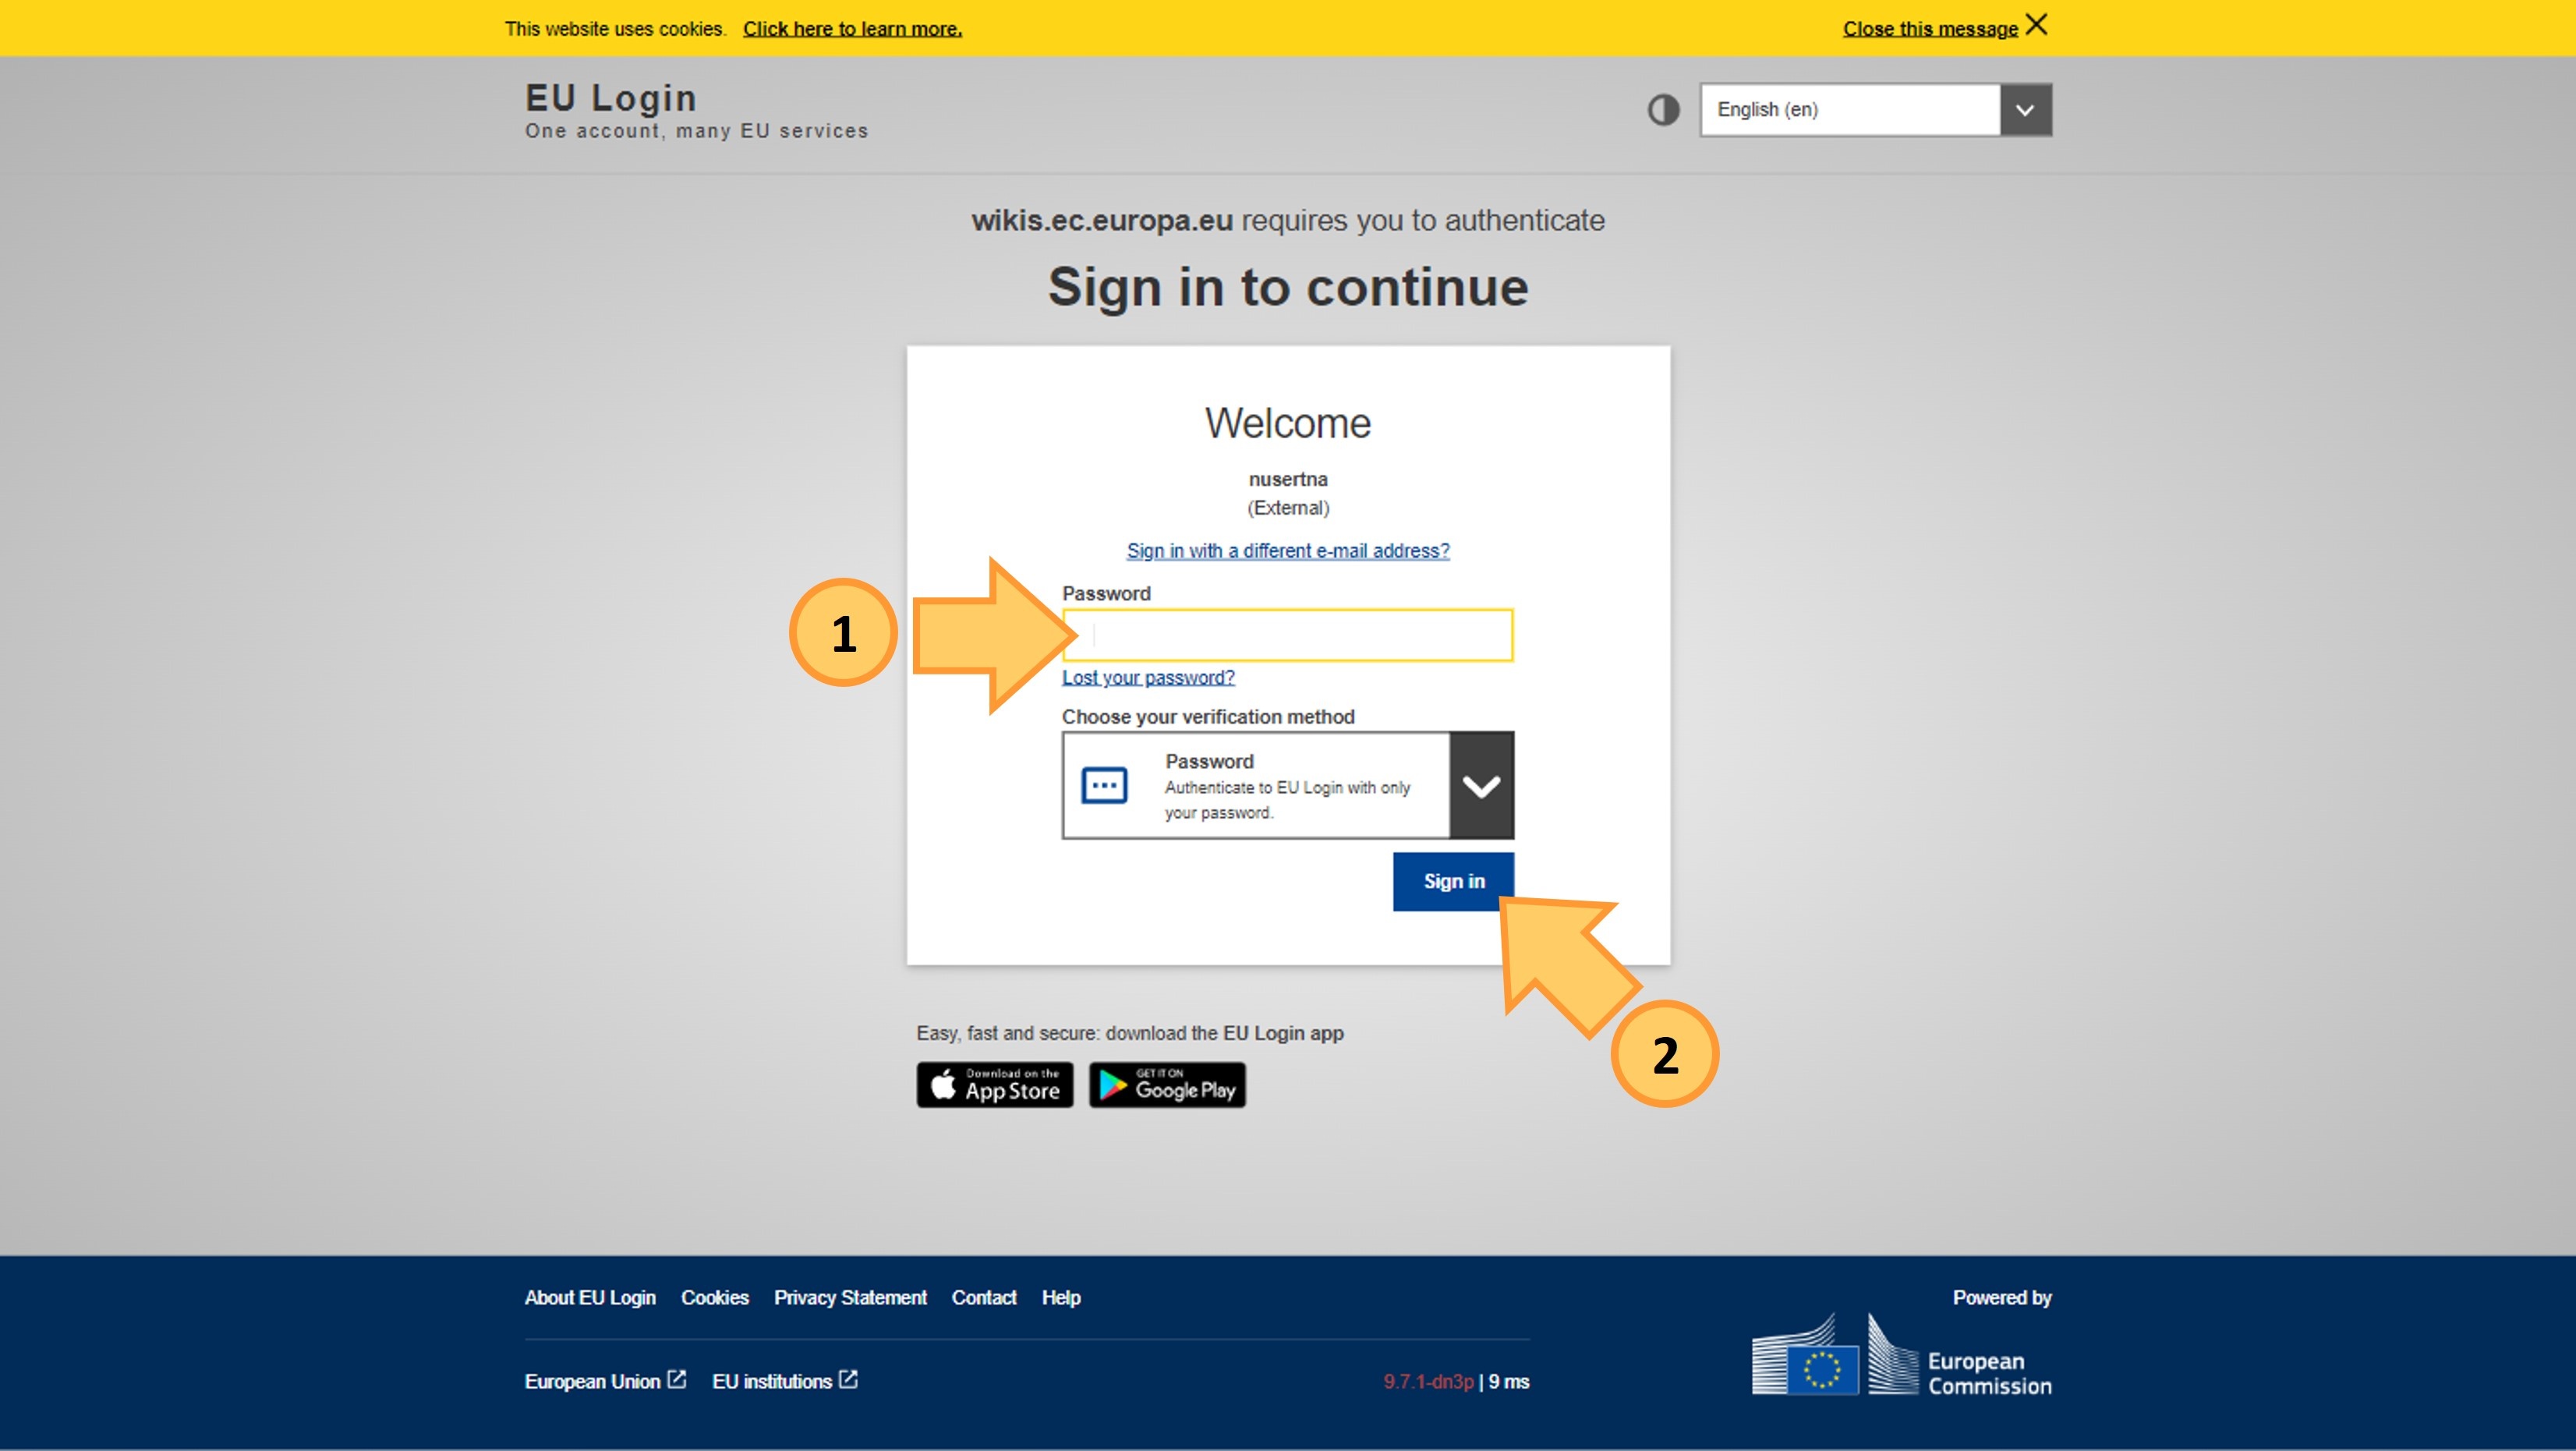 EU Login password landing page.